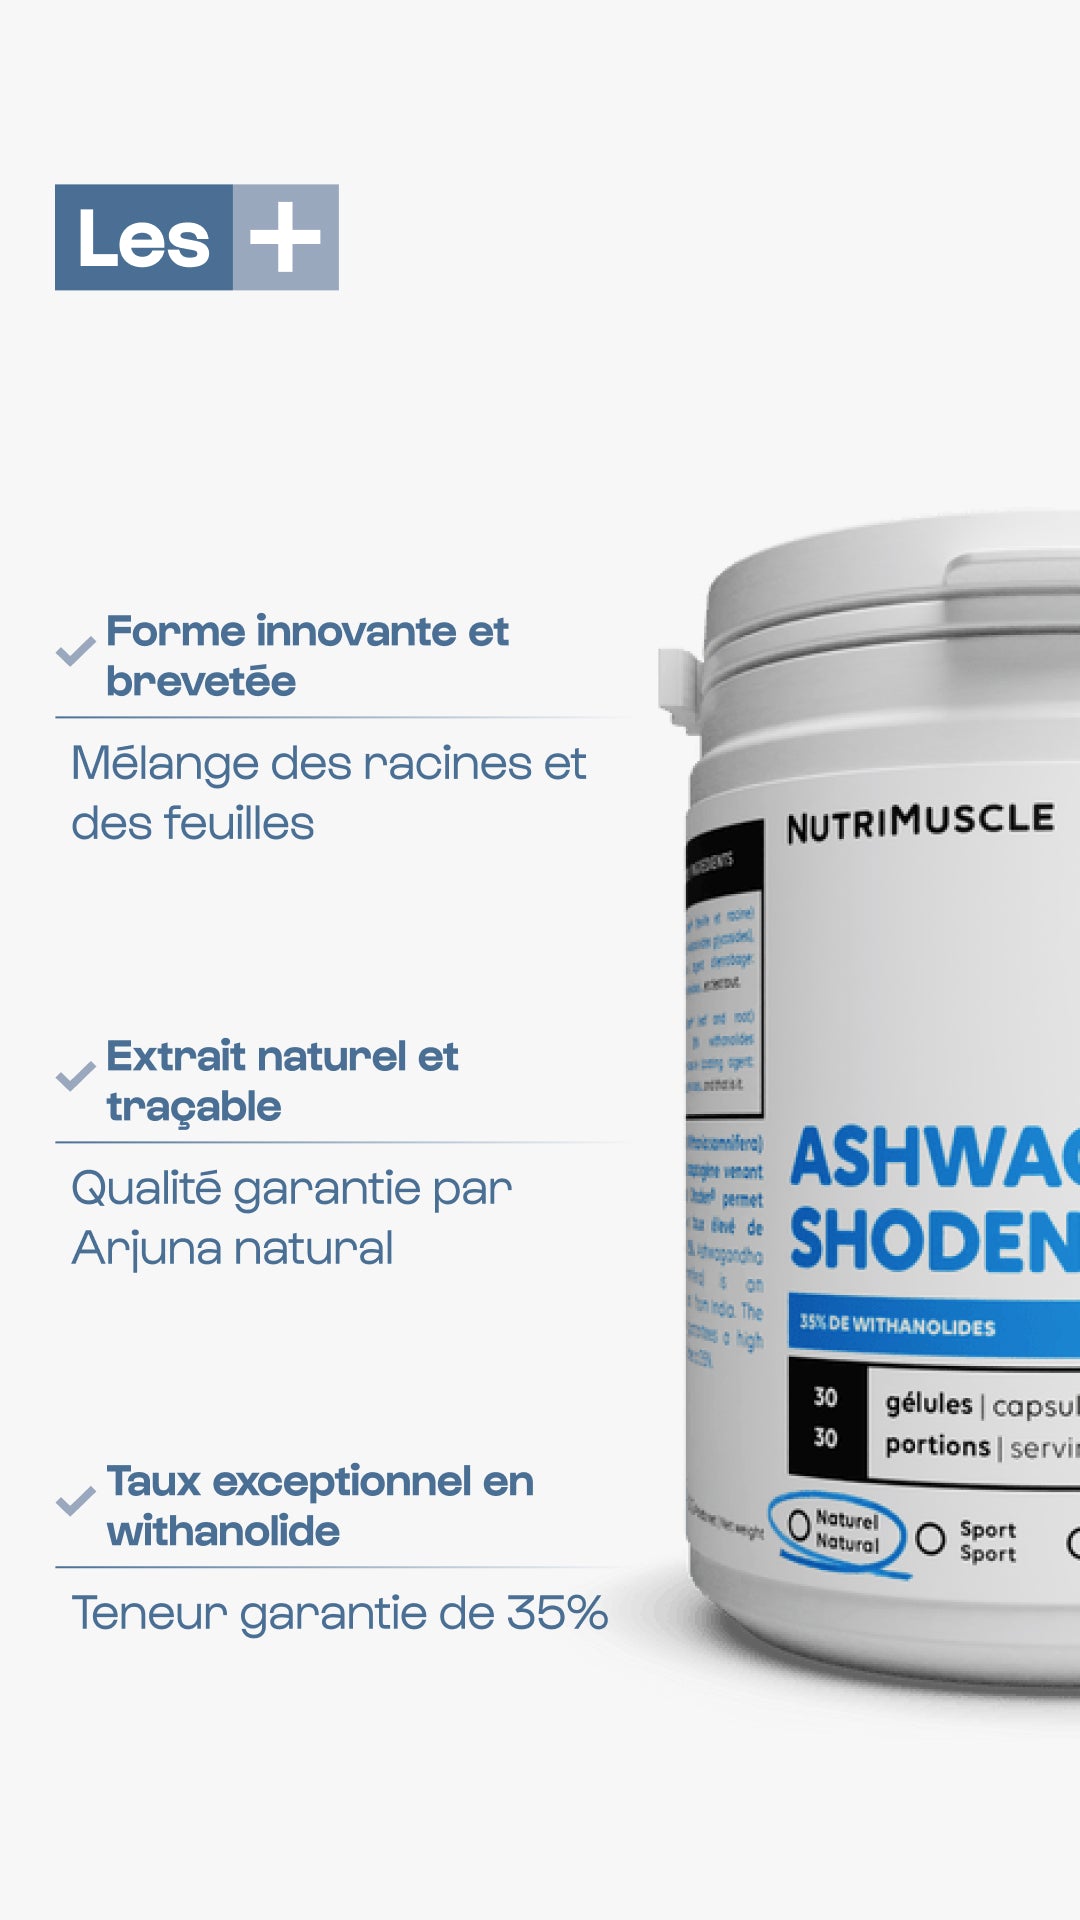 Ashwagandha Shoden® | 35% de withanolides